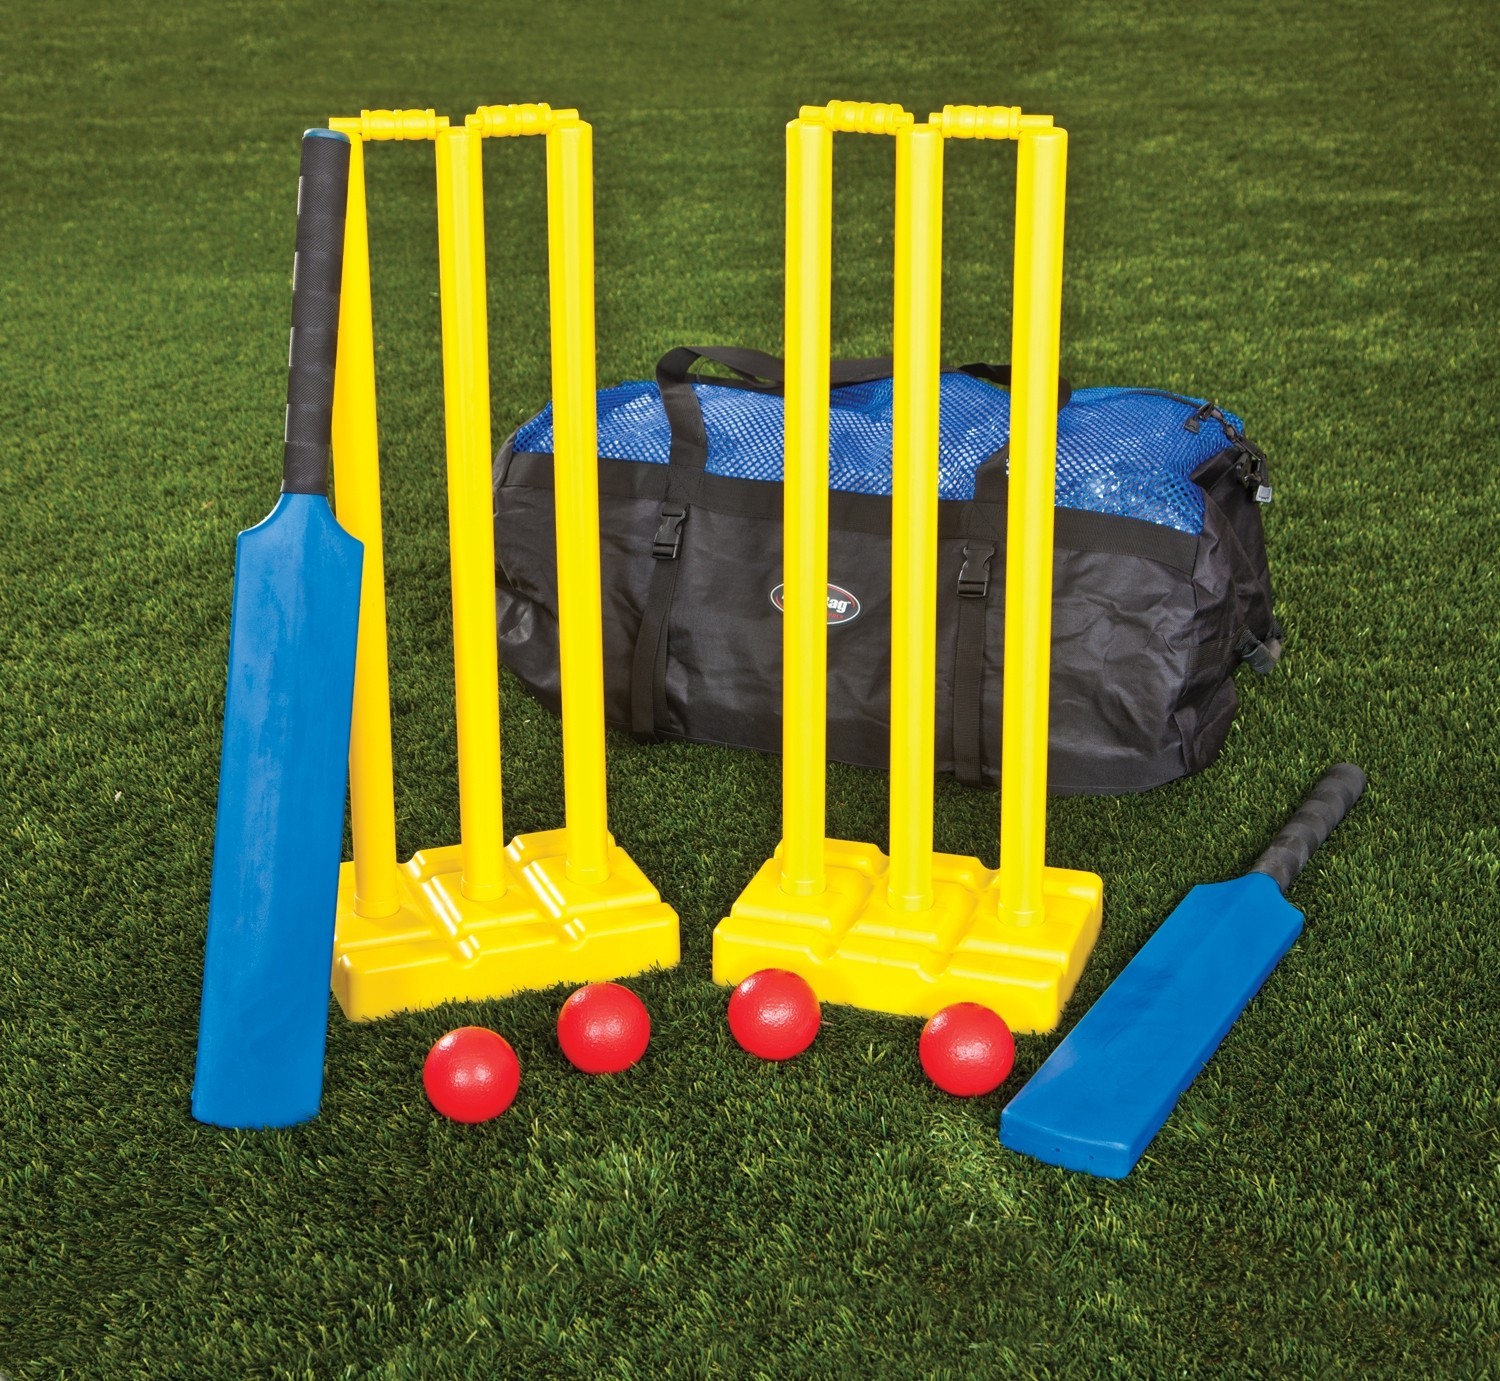 Cricket Set Includes 2 - 30" Bats, 4 Balls, 2 Wickets, 2 Bails, Instructions And Bag